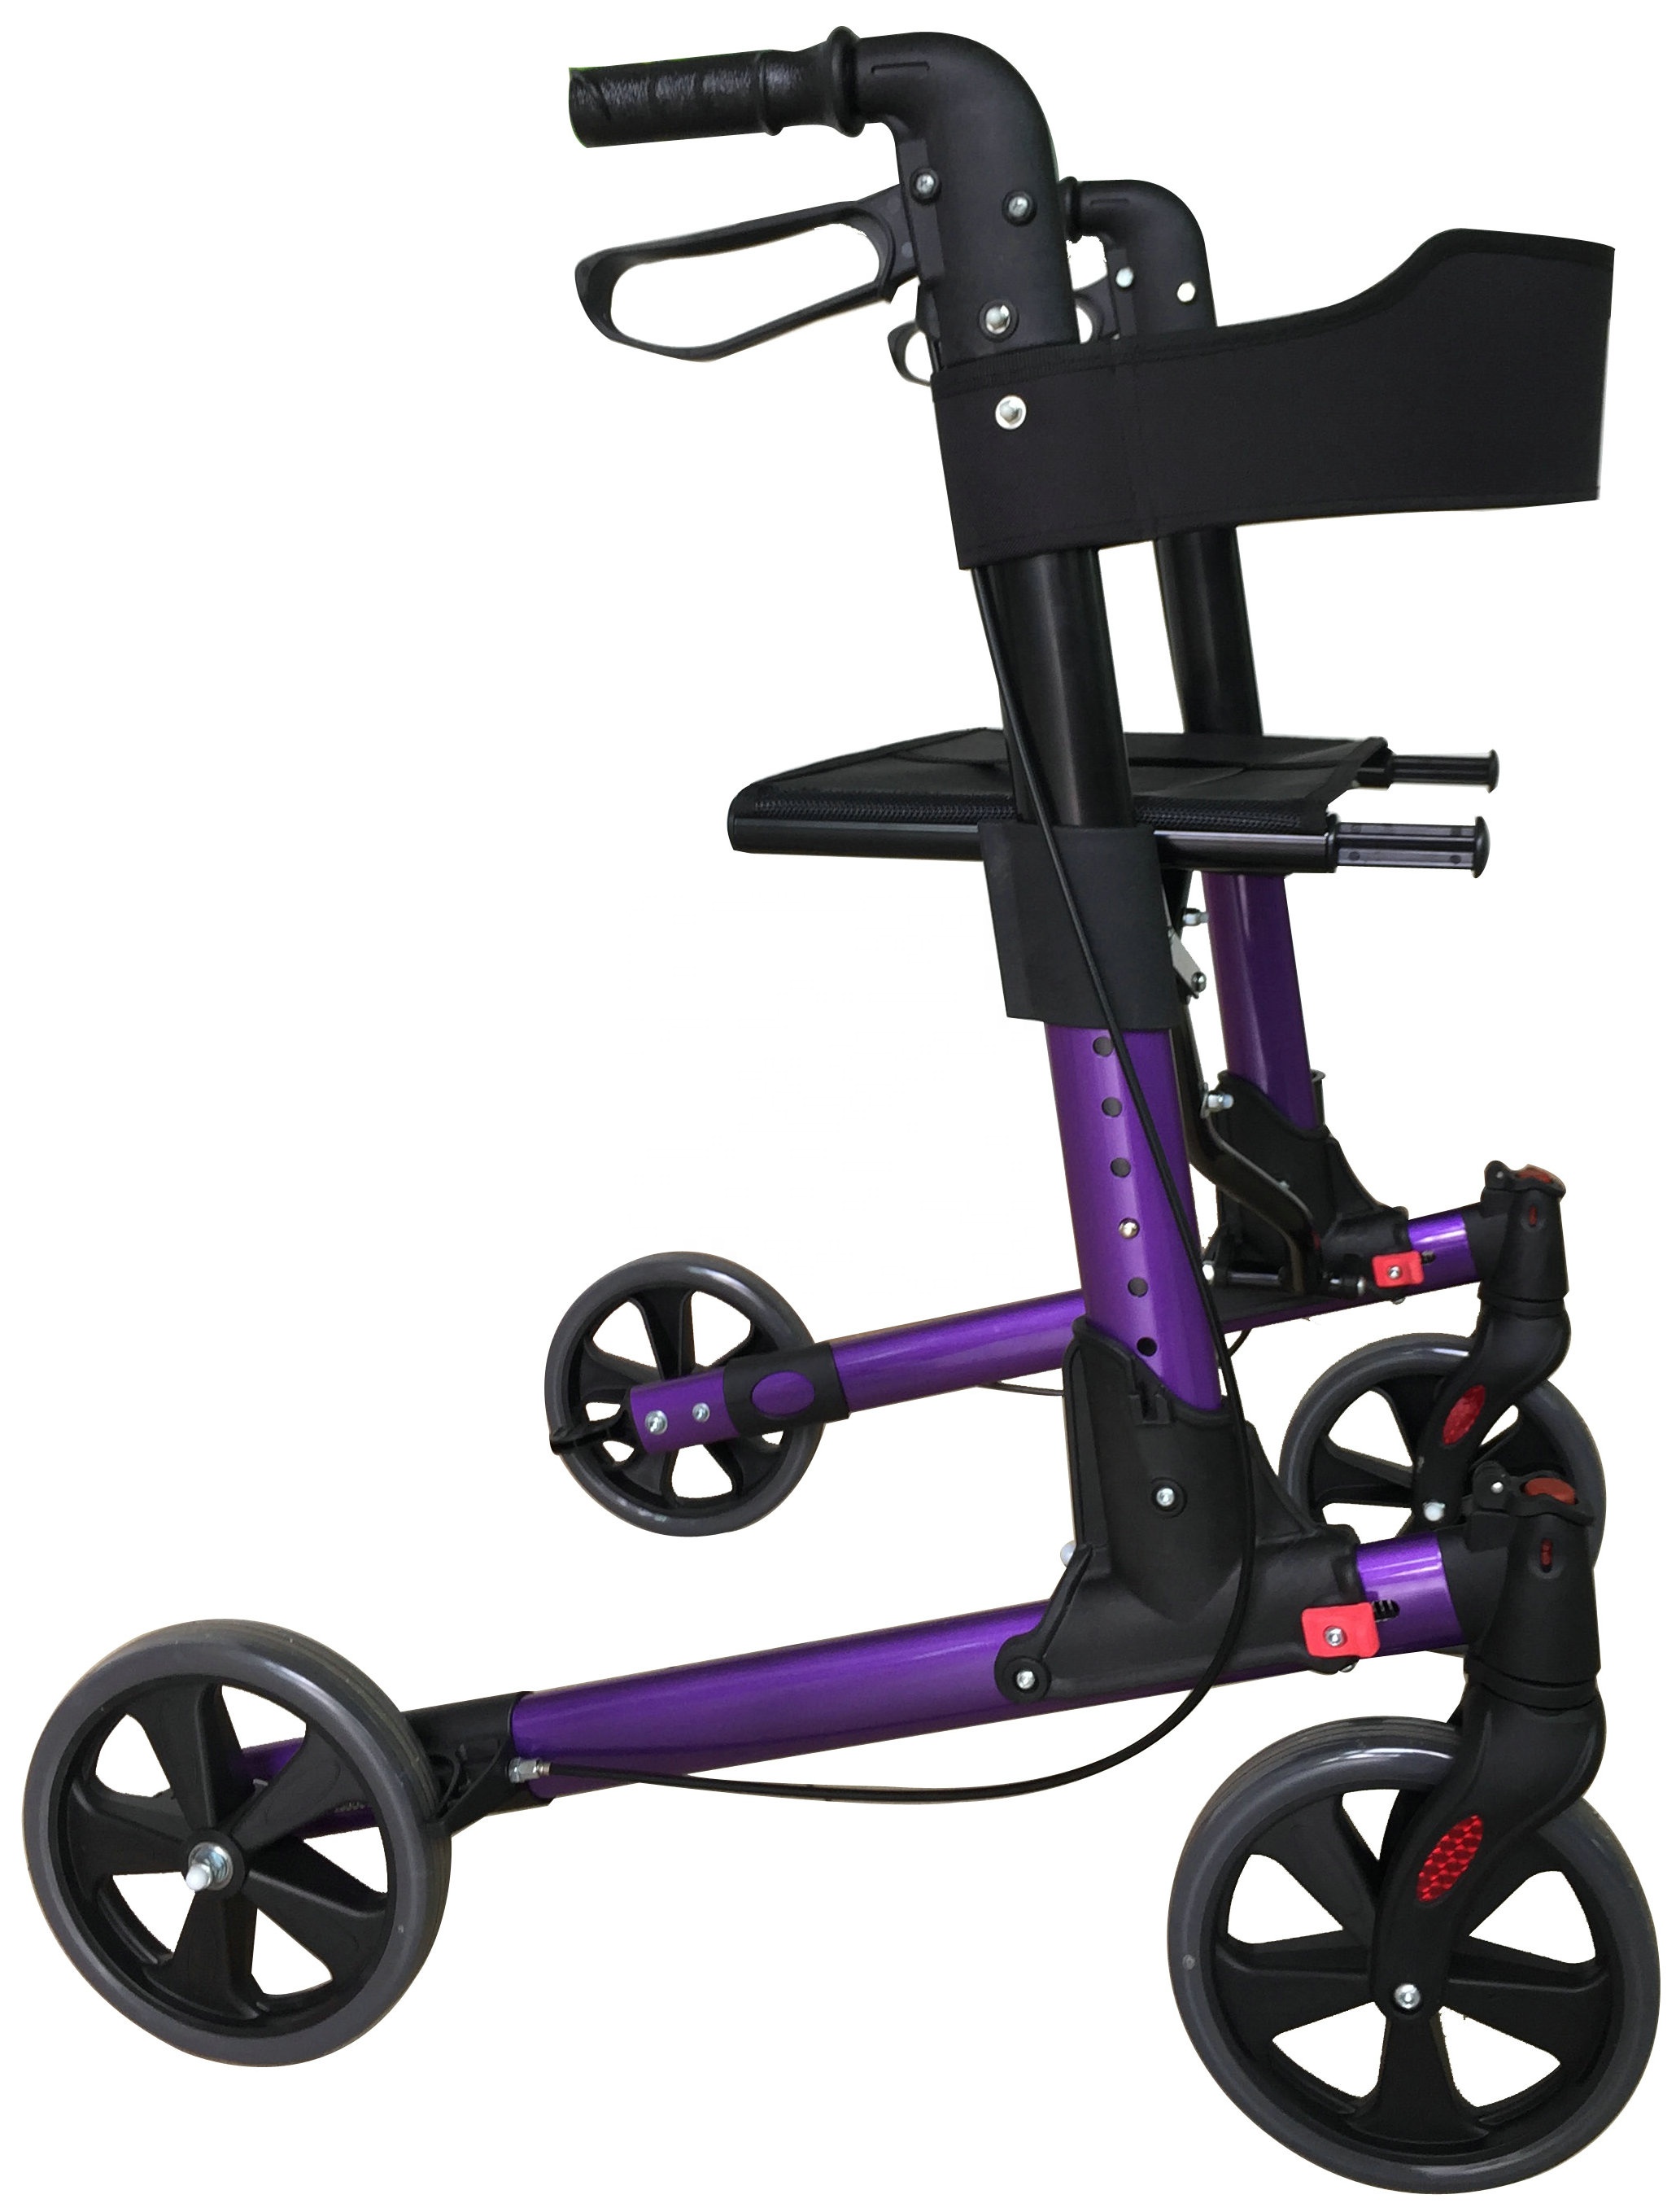 Összecsukható mobilitási gördülő sétáló kerekekkel ülés háttámla és tároló tasak tra03